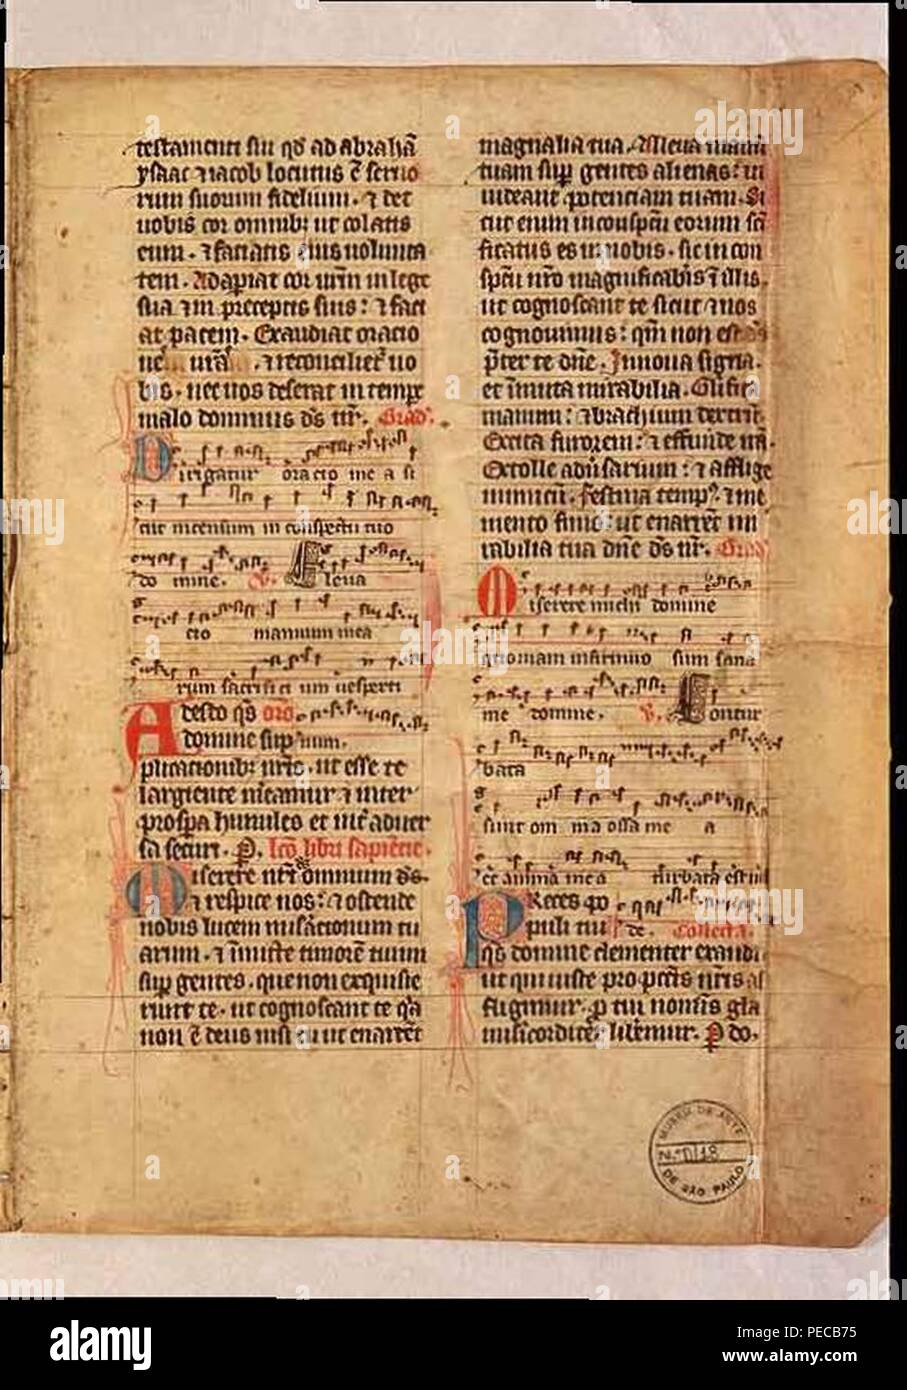 Artista italiano, século XV - página de psaltério (pergaminho) 01. Stock Photo